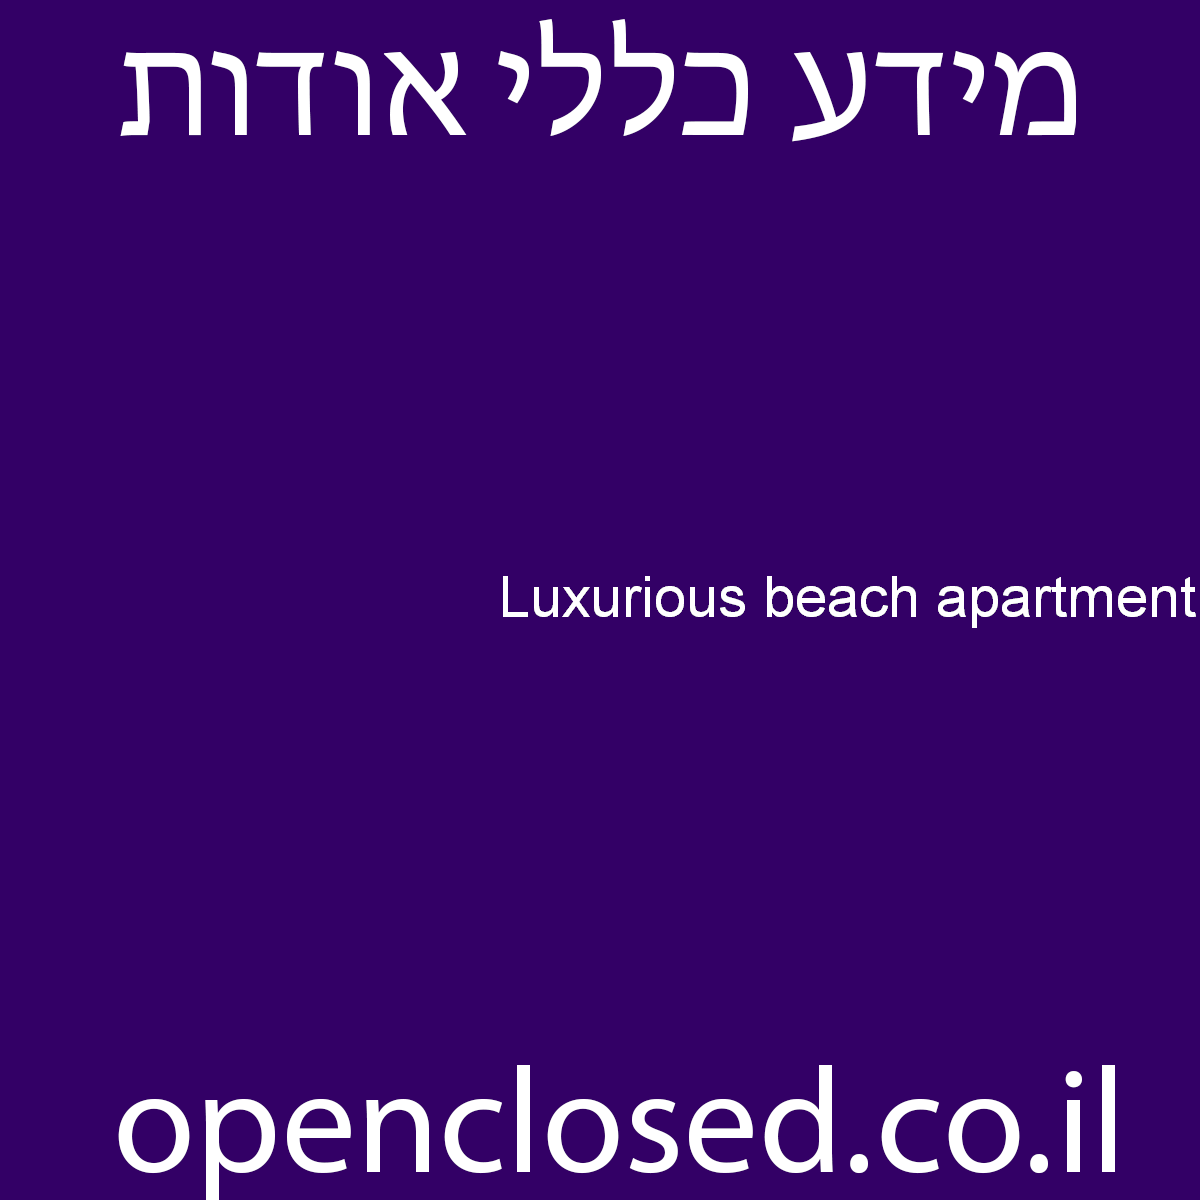 Luxurious beach apartment